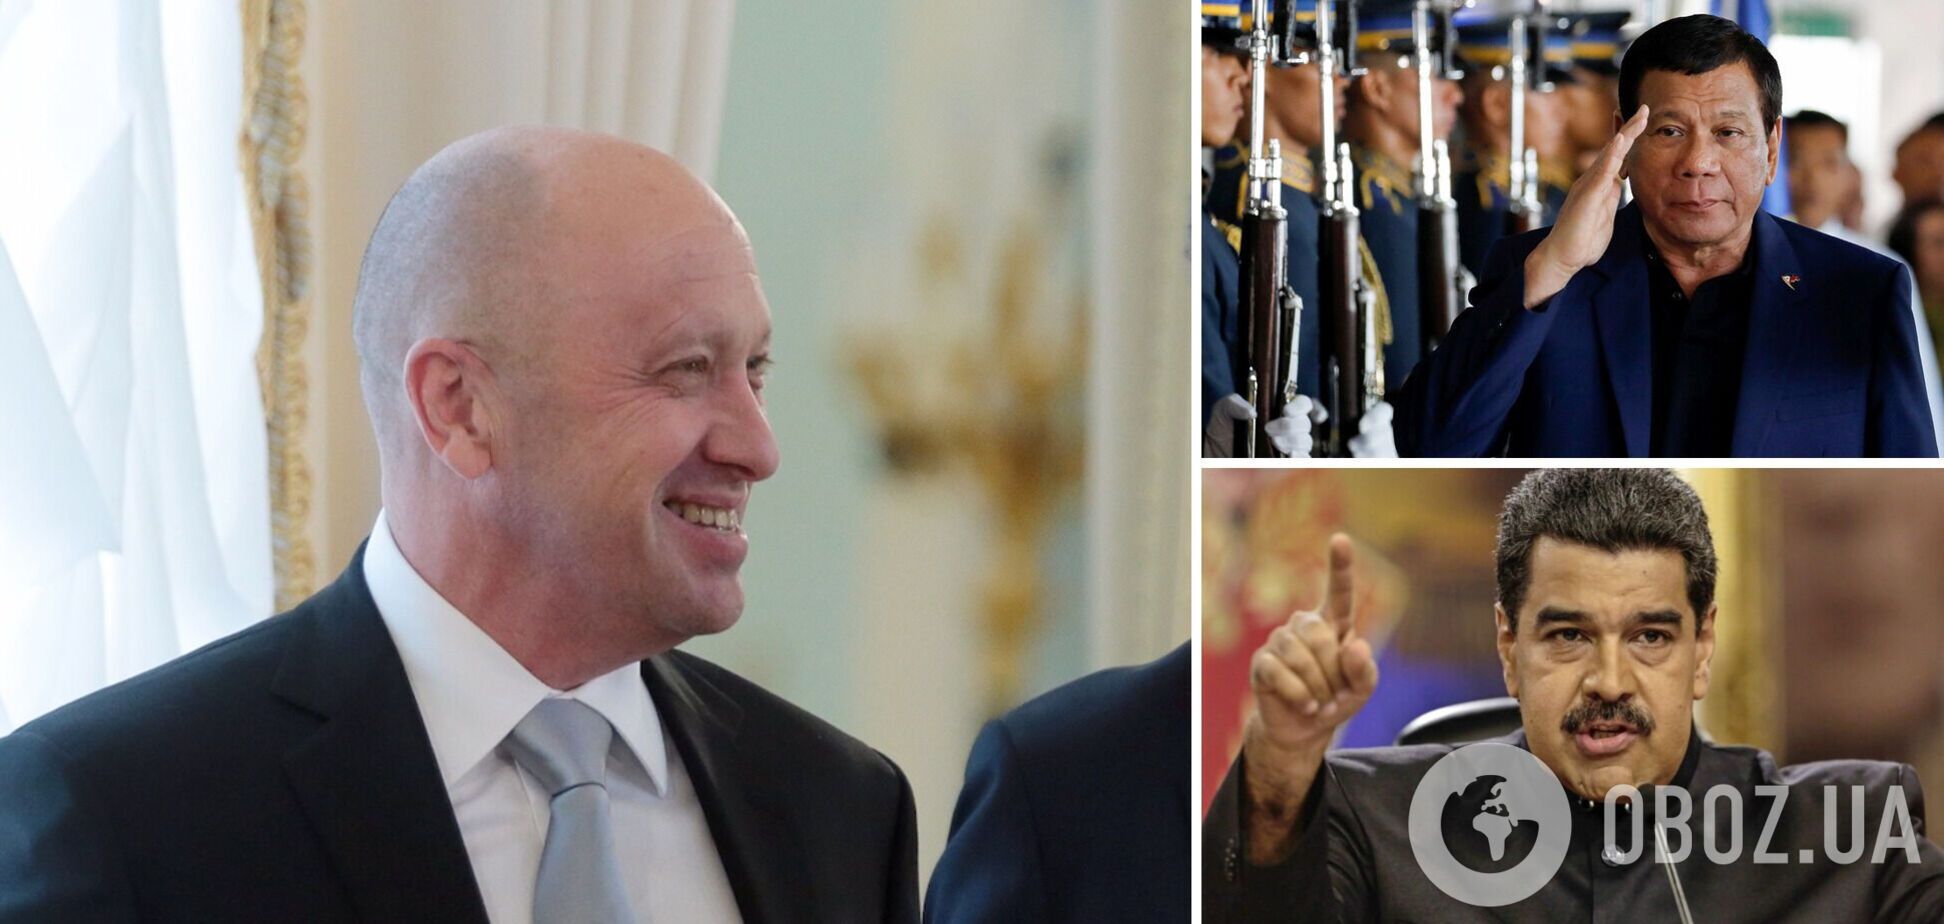 'Повар Путина' Пригожин получил звание 'Коррупционер года': ранее премию получали Мадуро, Дутерте и Путин